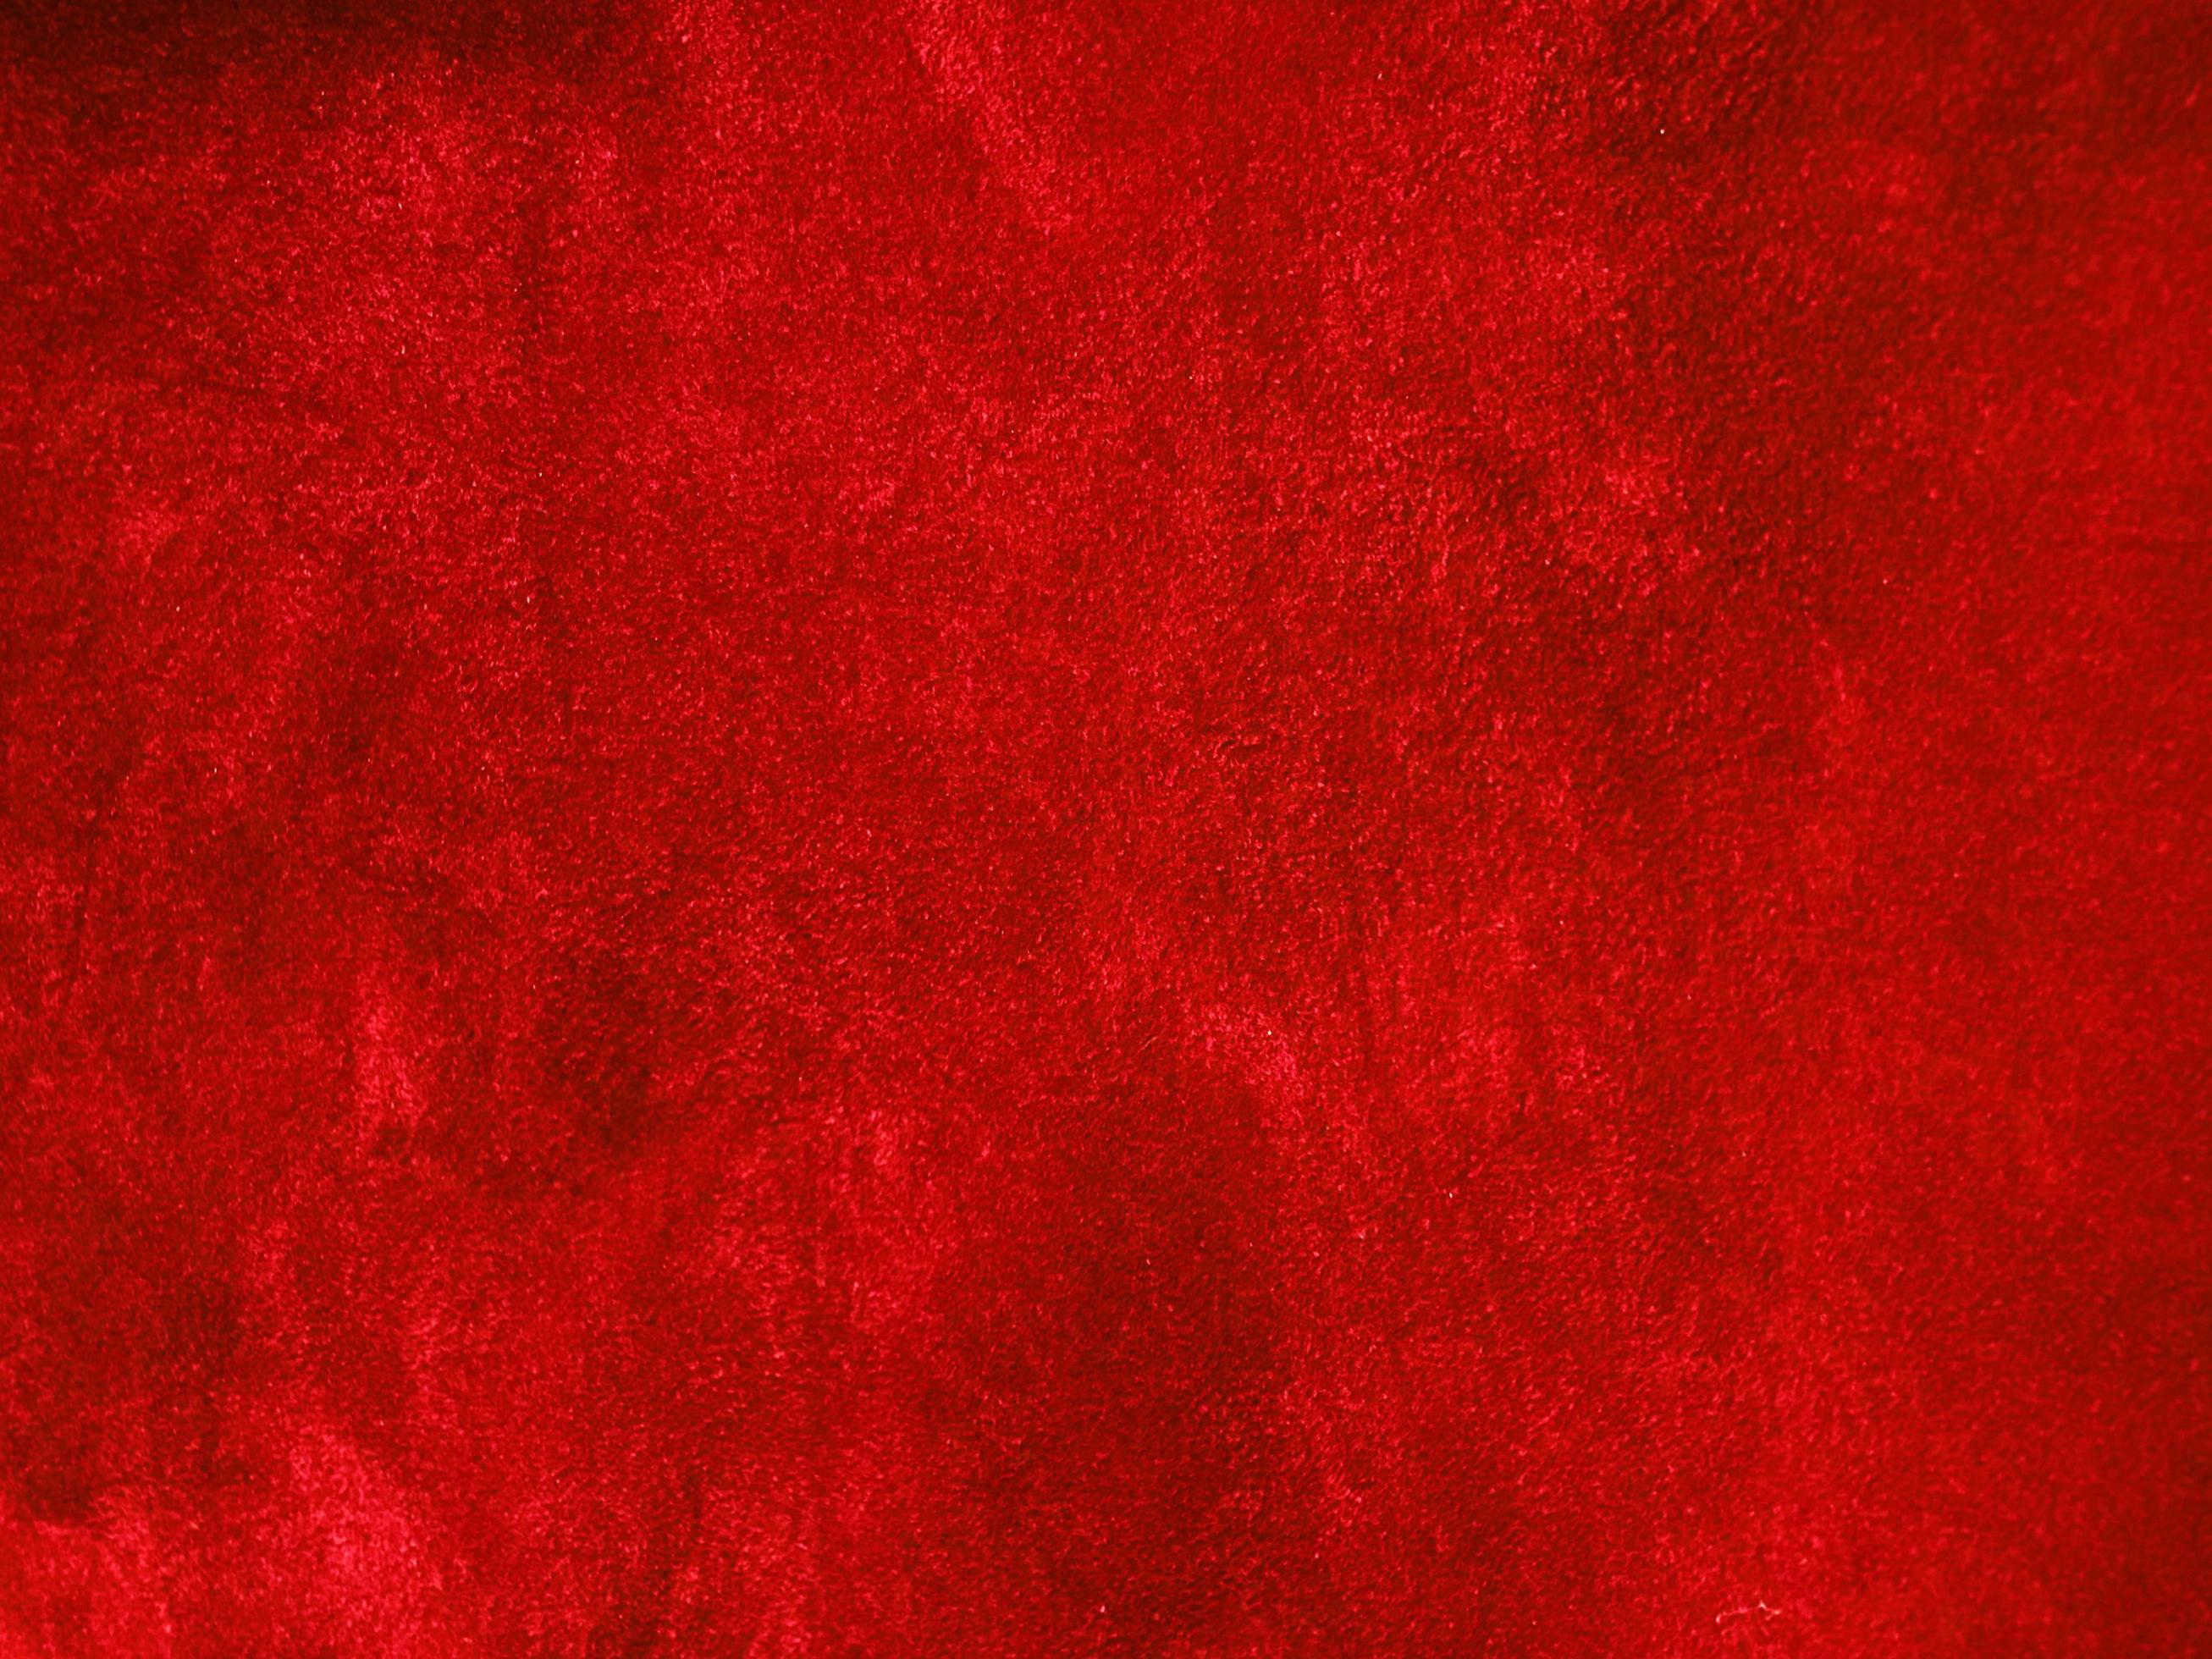 Dark red velvet texture background sẽ mang đến cho bạn cảm giác thỏa mái và sang trọng khi xem bức ảnh. Nền đỏ đậm cùng kết cấu nhung mềm mại, tạo nên một khoảng trống trang trọng để thể hiện tấm hình của bạn.